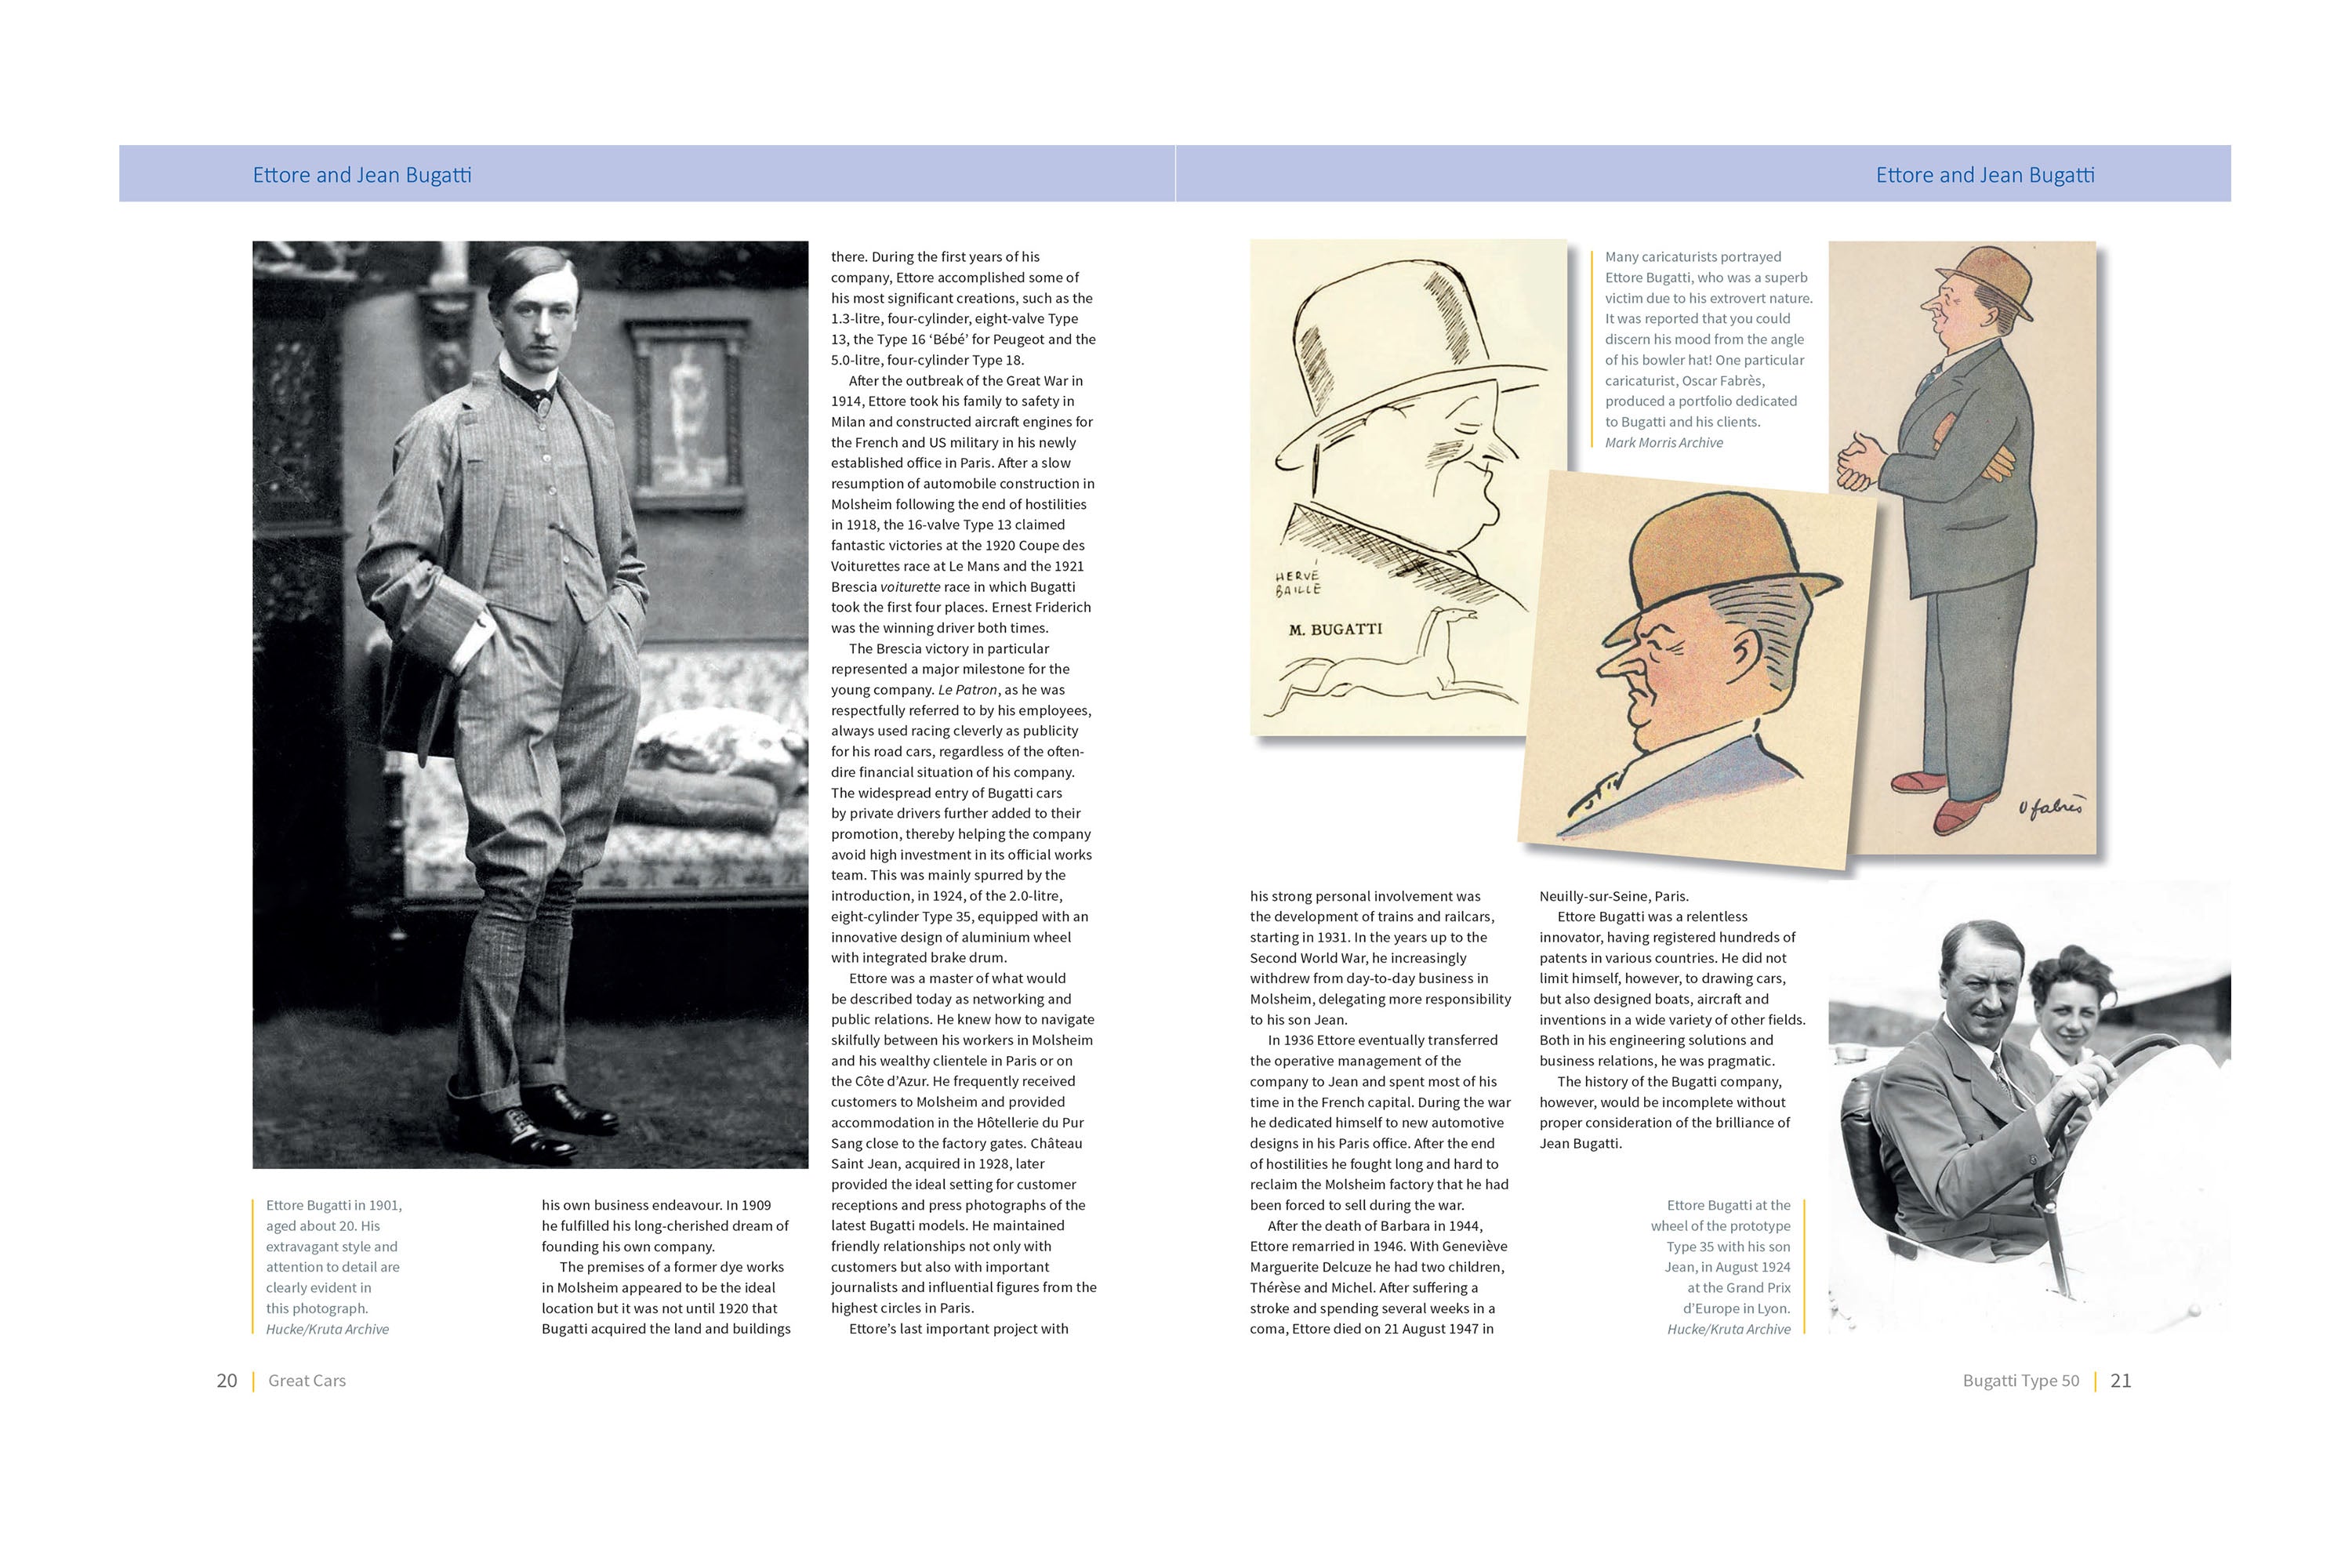 Bugatti Type 50 - The autobiography of Bugatti\'s first Le Mans car (Li –  Amalgam Collection